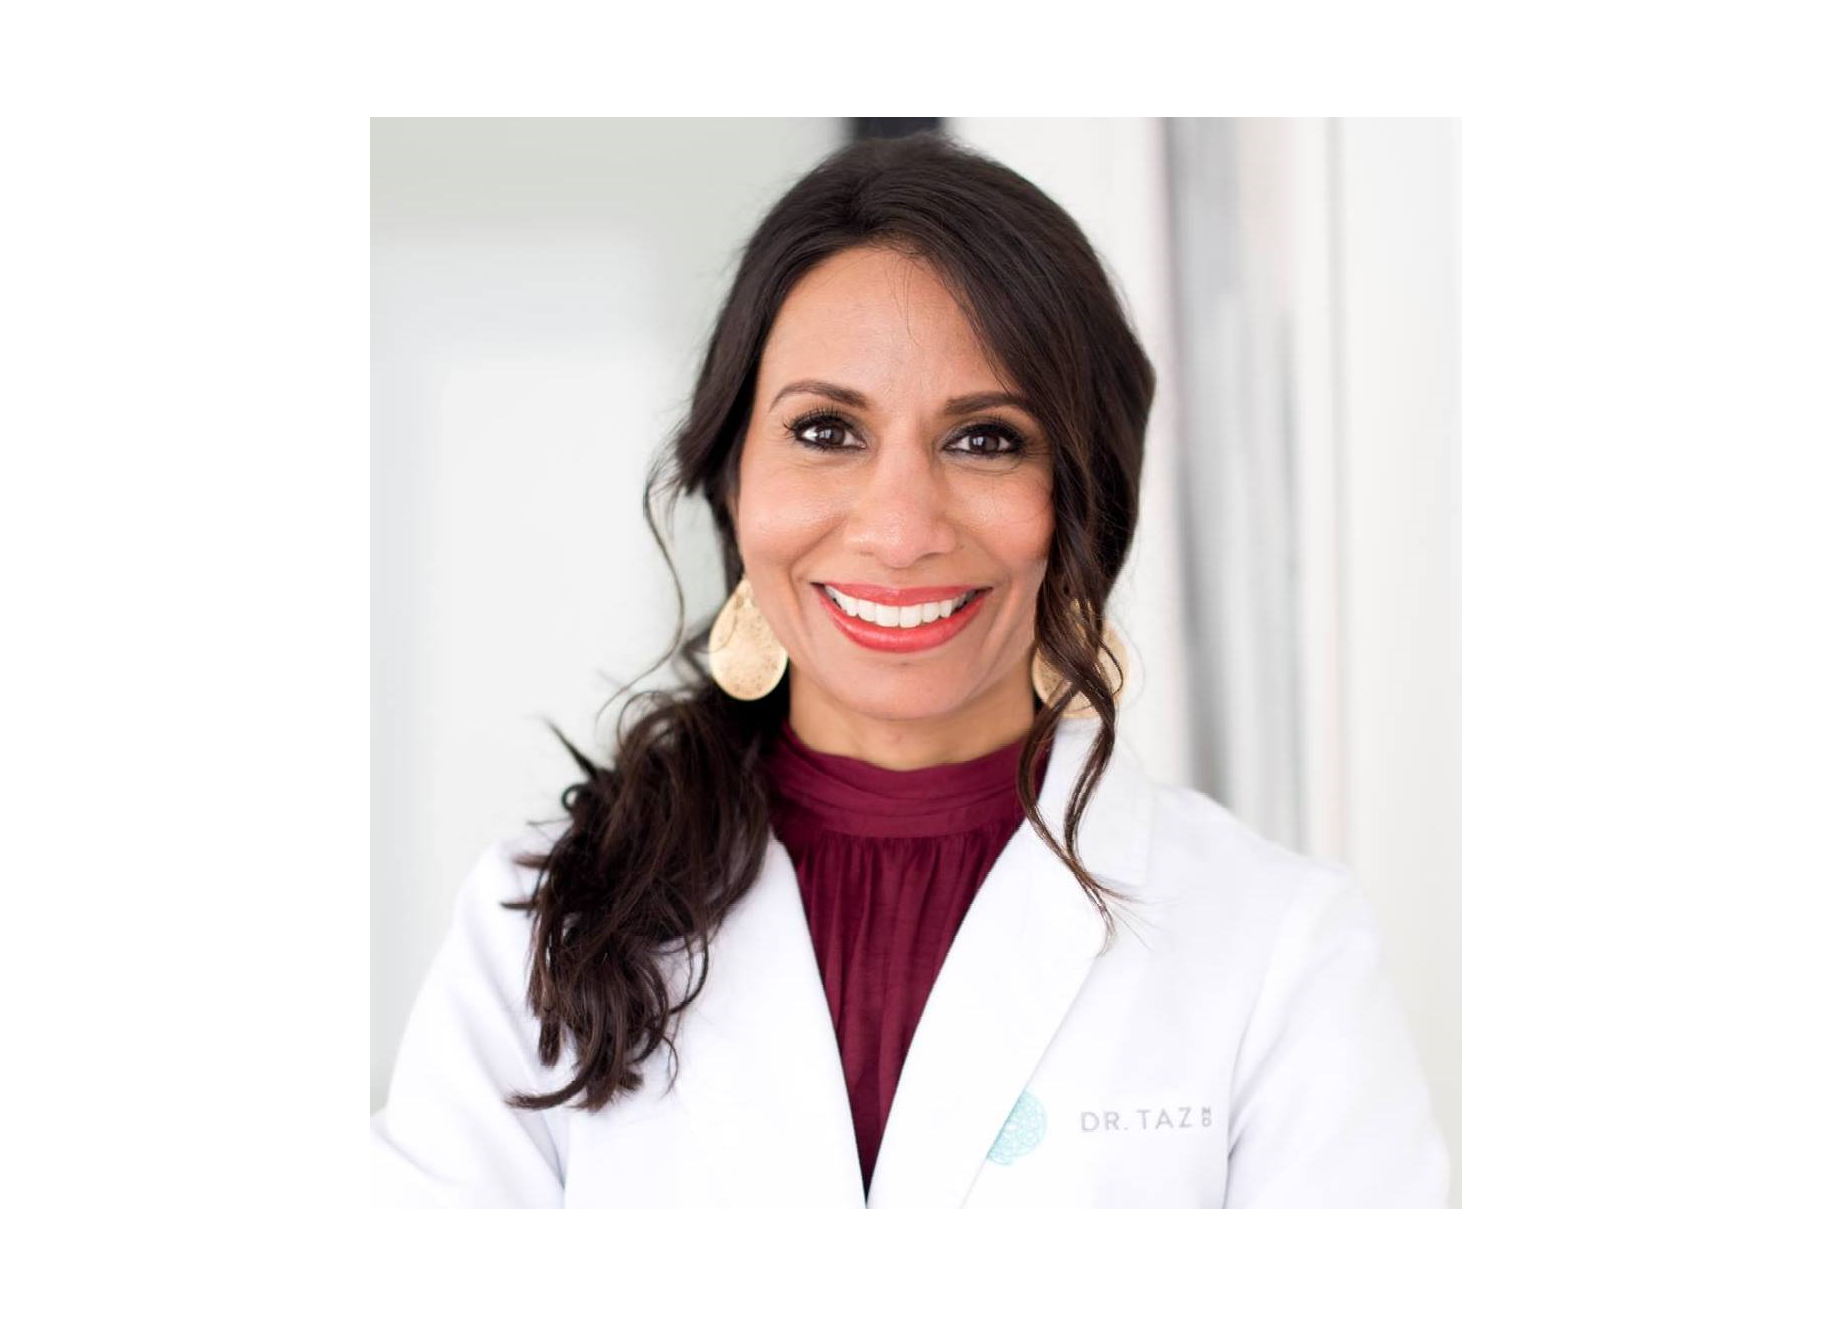 Dr. Tasneem Bhatia: A Vanguard of Integrative Medicine